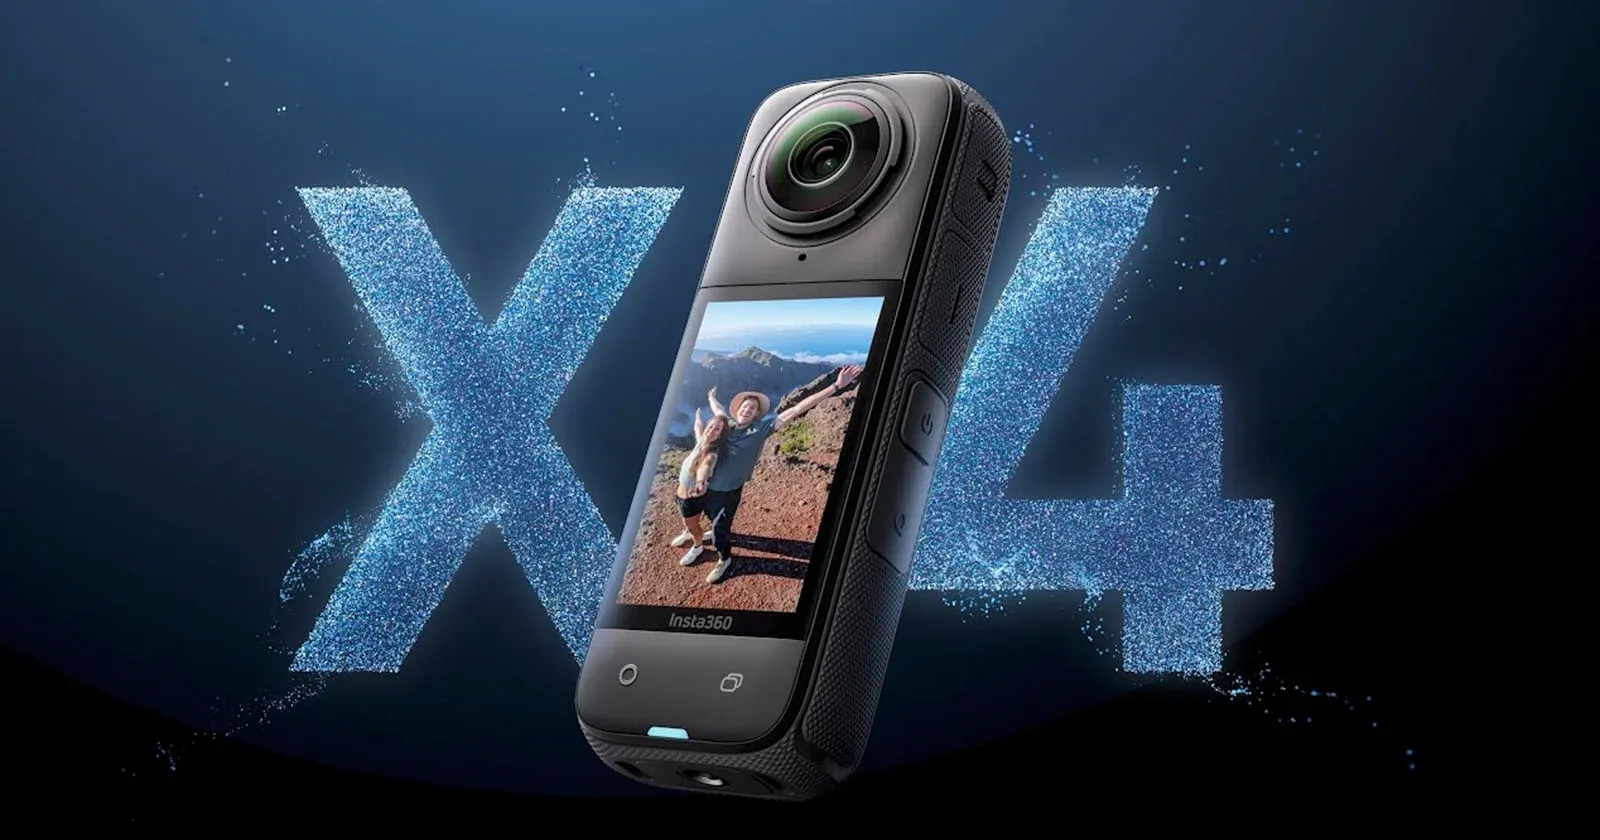 Insta360 X4 ra mắt với khả năng quay video 360 độ được nâng cấp lên 8K